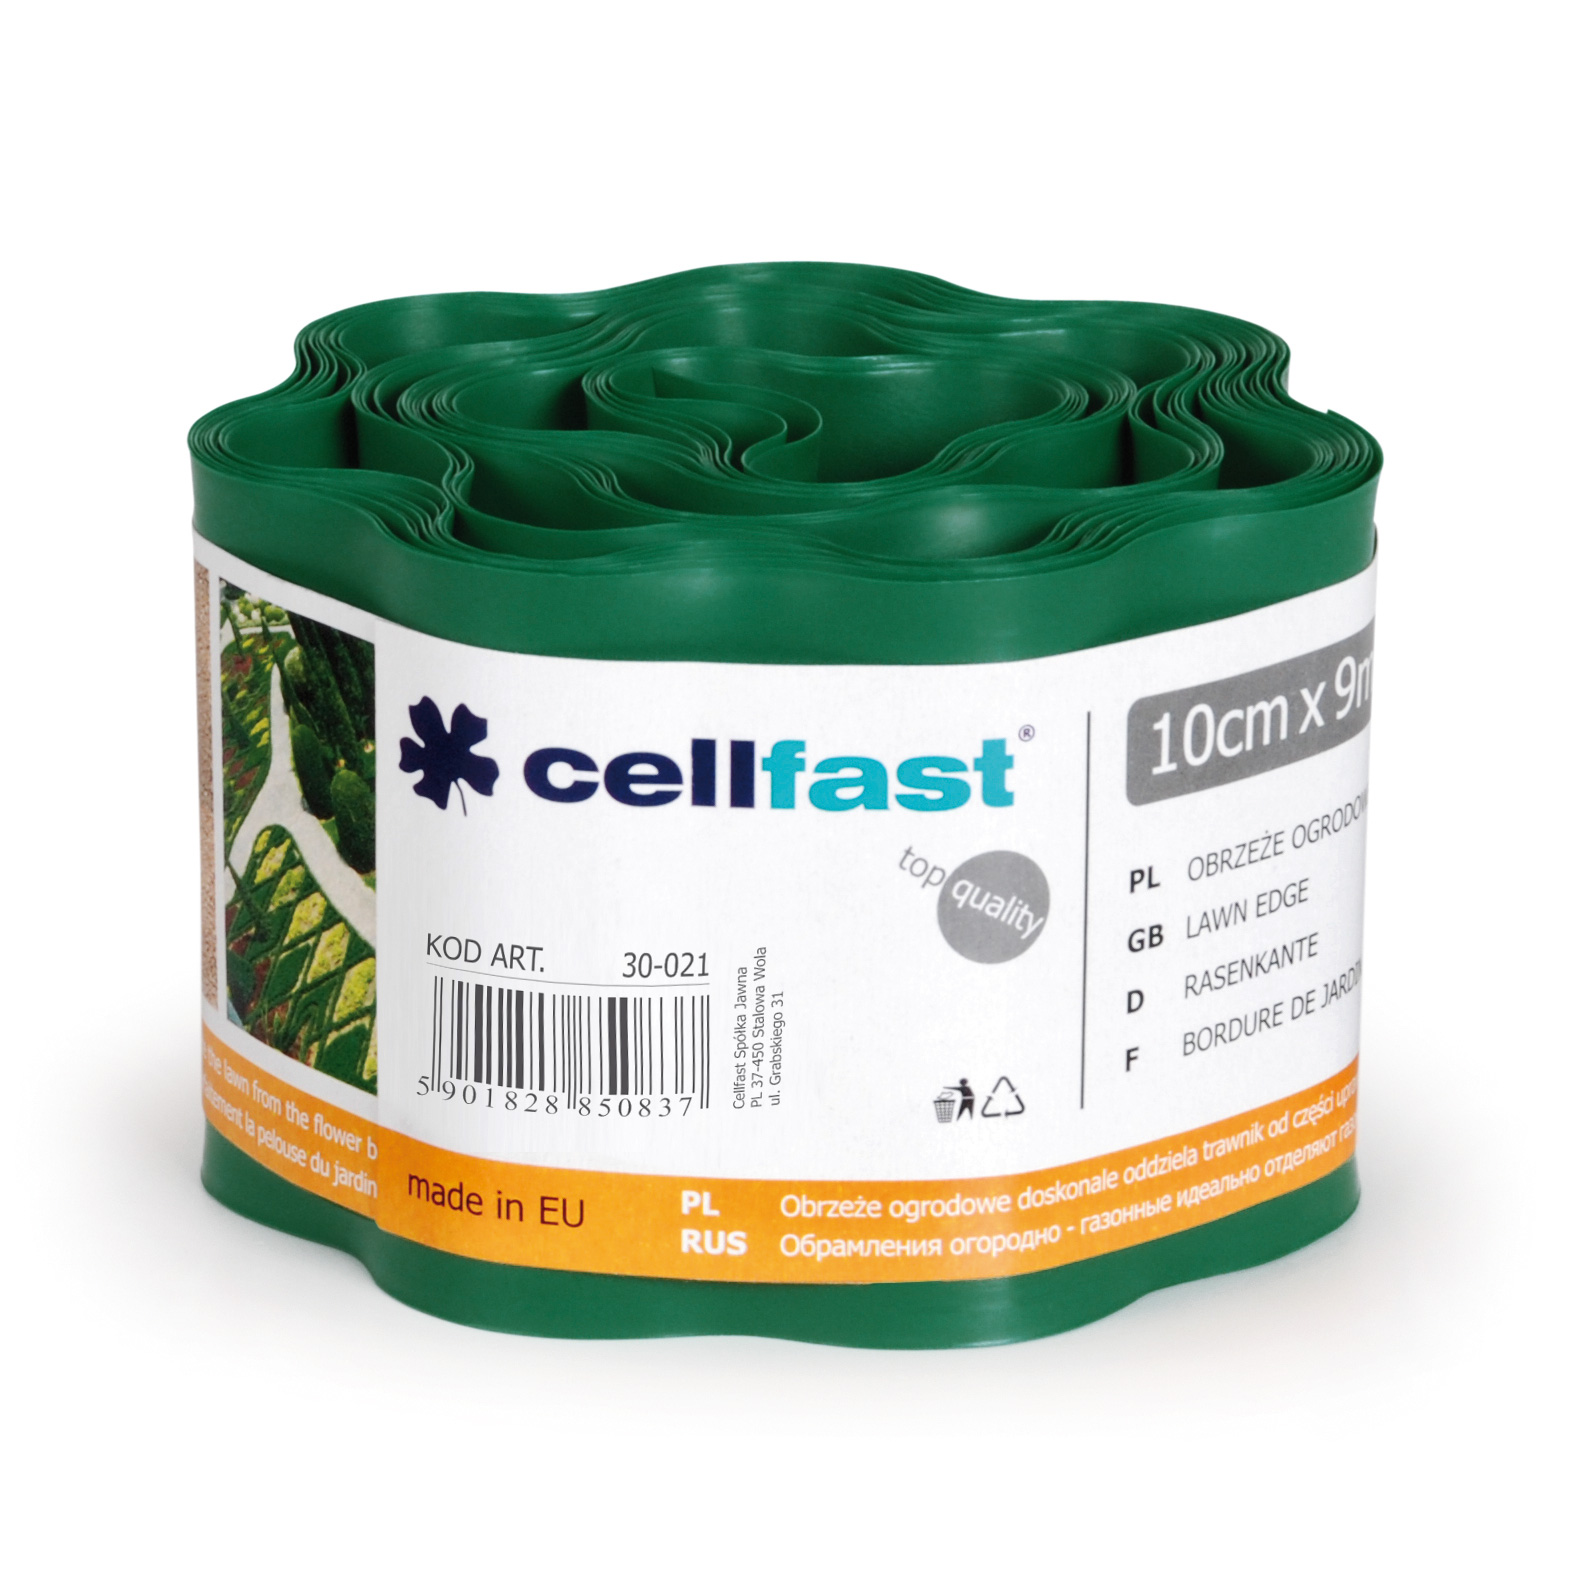 Cellfast Obrzeze ogrodowe ciemna zielen 10cm x 9m 30-021 989986 (5901828850837)